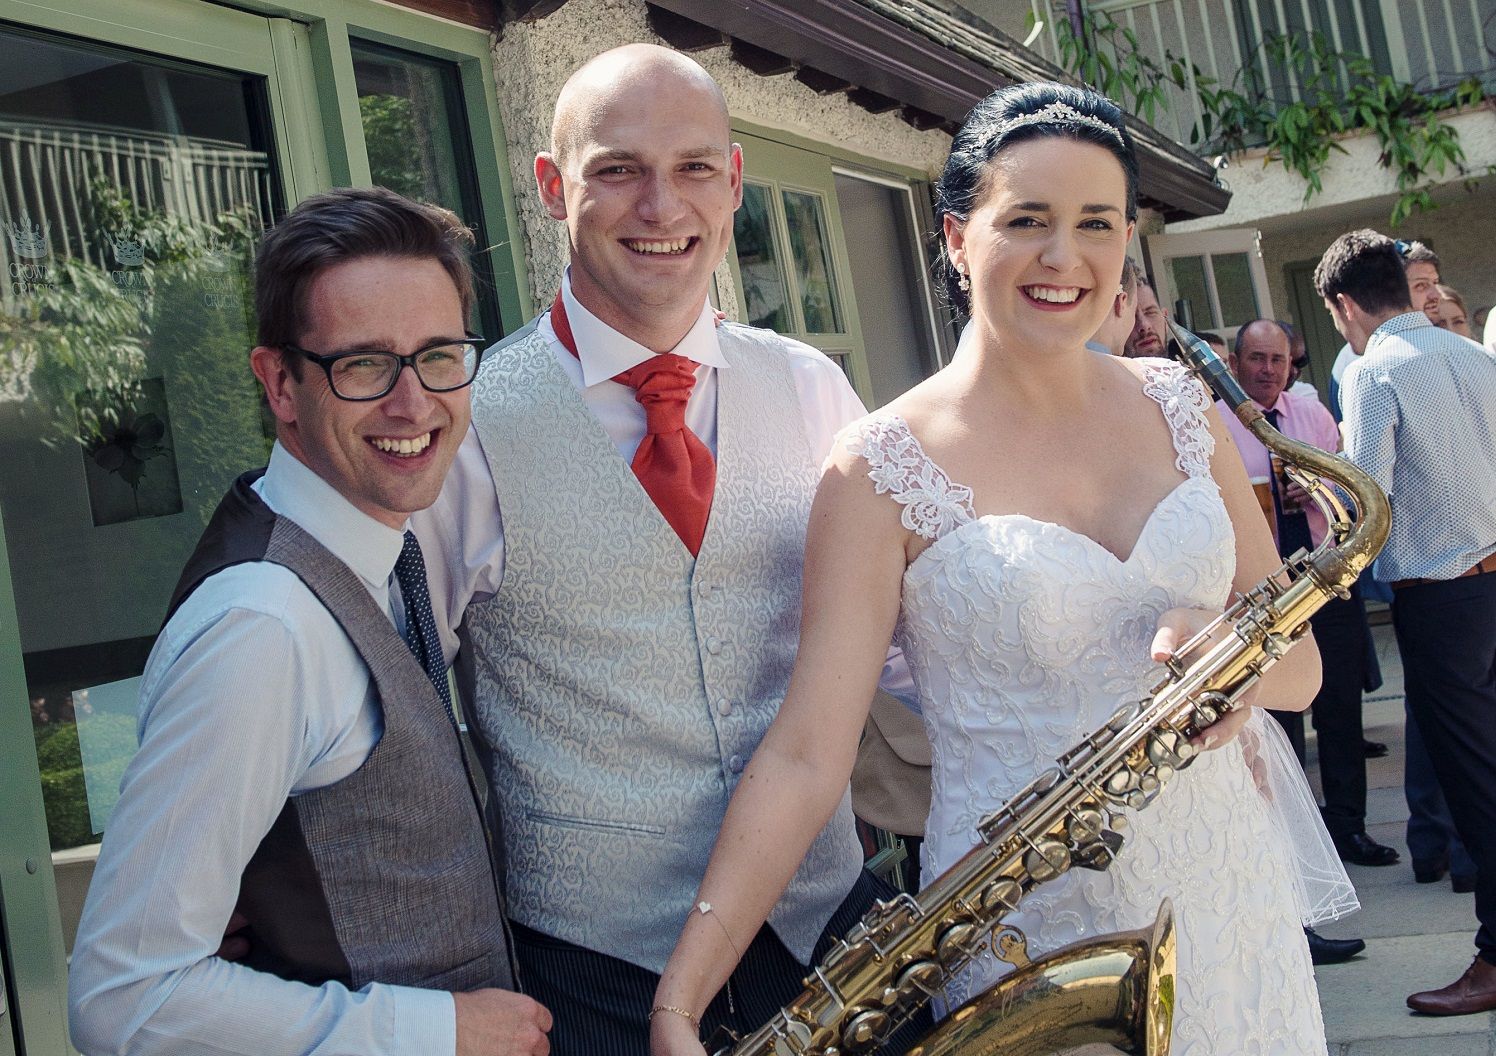 Dinner Jazz Sax - Wedding Saxophonist in Wiltshire - Love That Wedding!